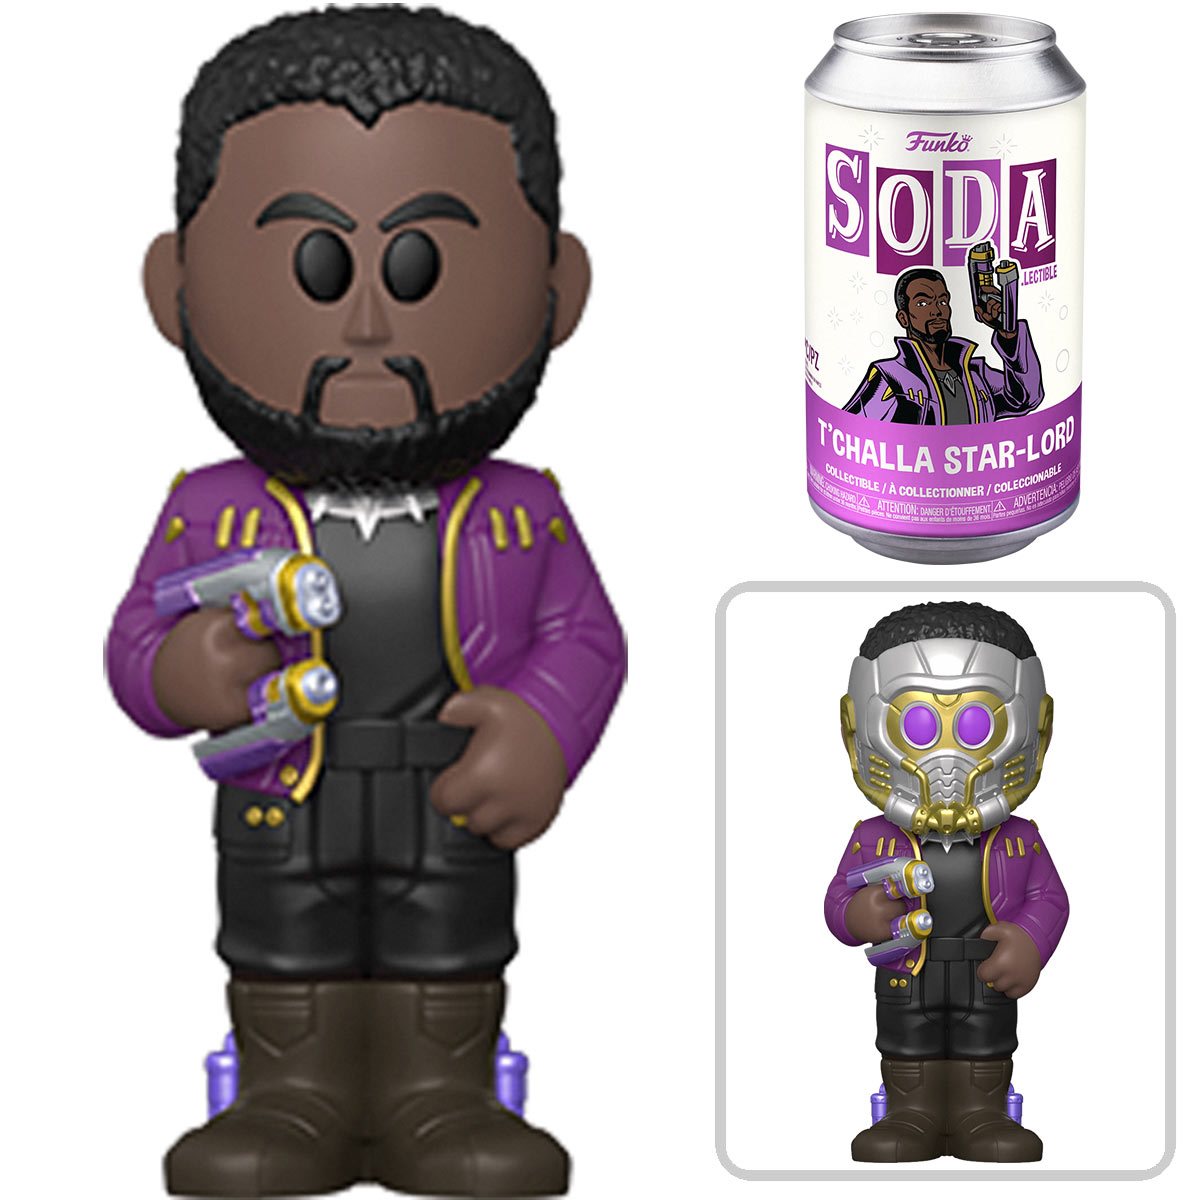 Funko Soda! Marvel's What If Starlord T'Challa Soda Figure